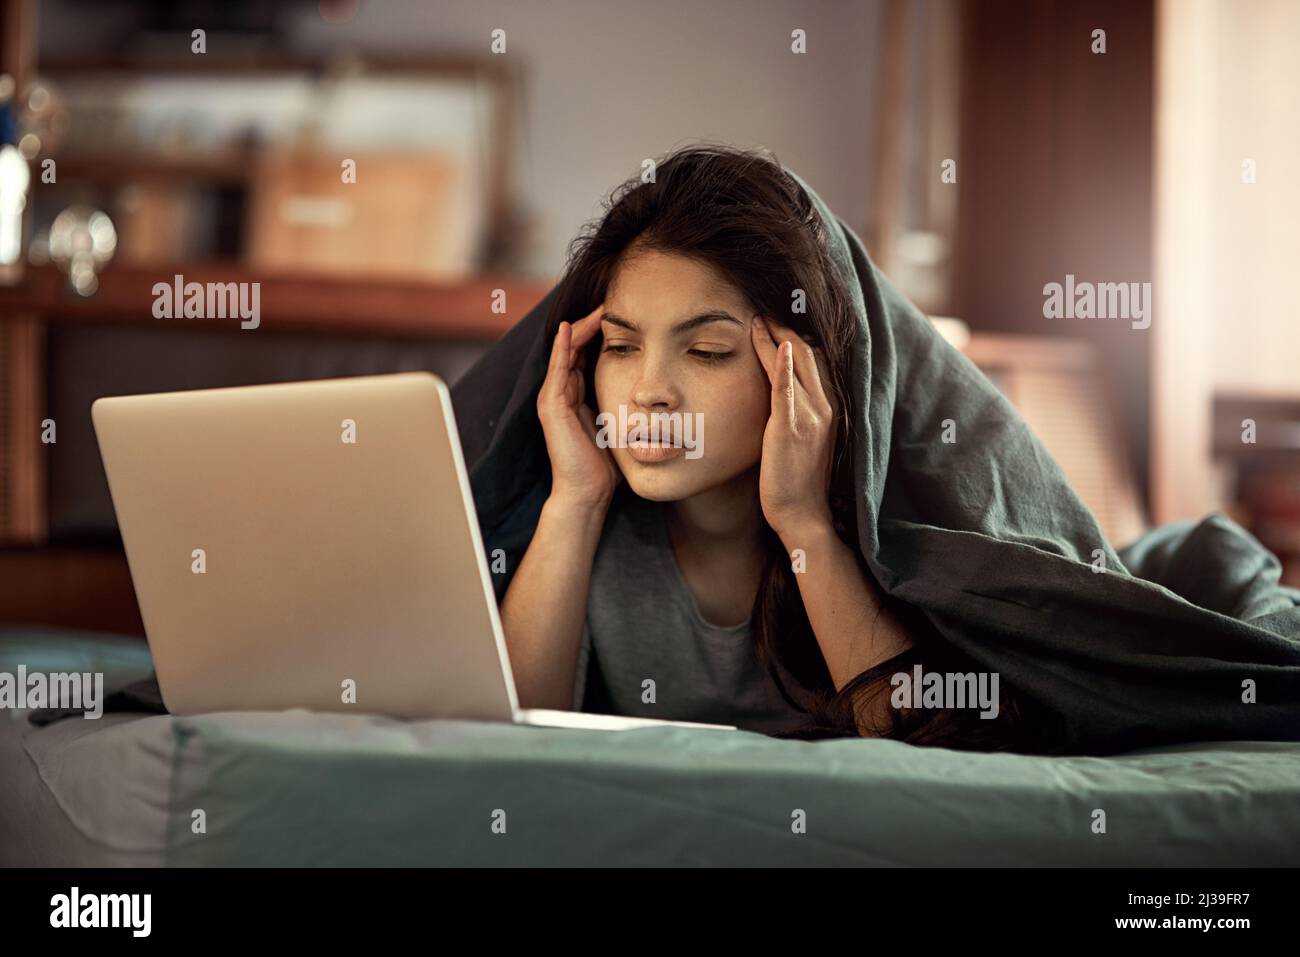 Je ne peux pas croire ce que la messagerie instantanée lit. Photo d'une jeune femme regardant son ordinateur portable dans la consternation alors qu'elle se trouve dans le lit. Banque D'Images